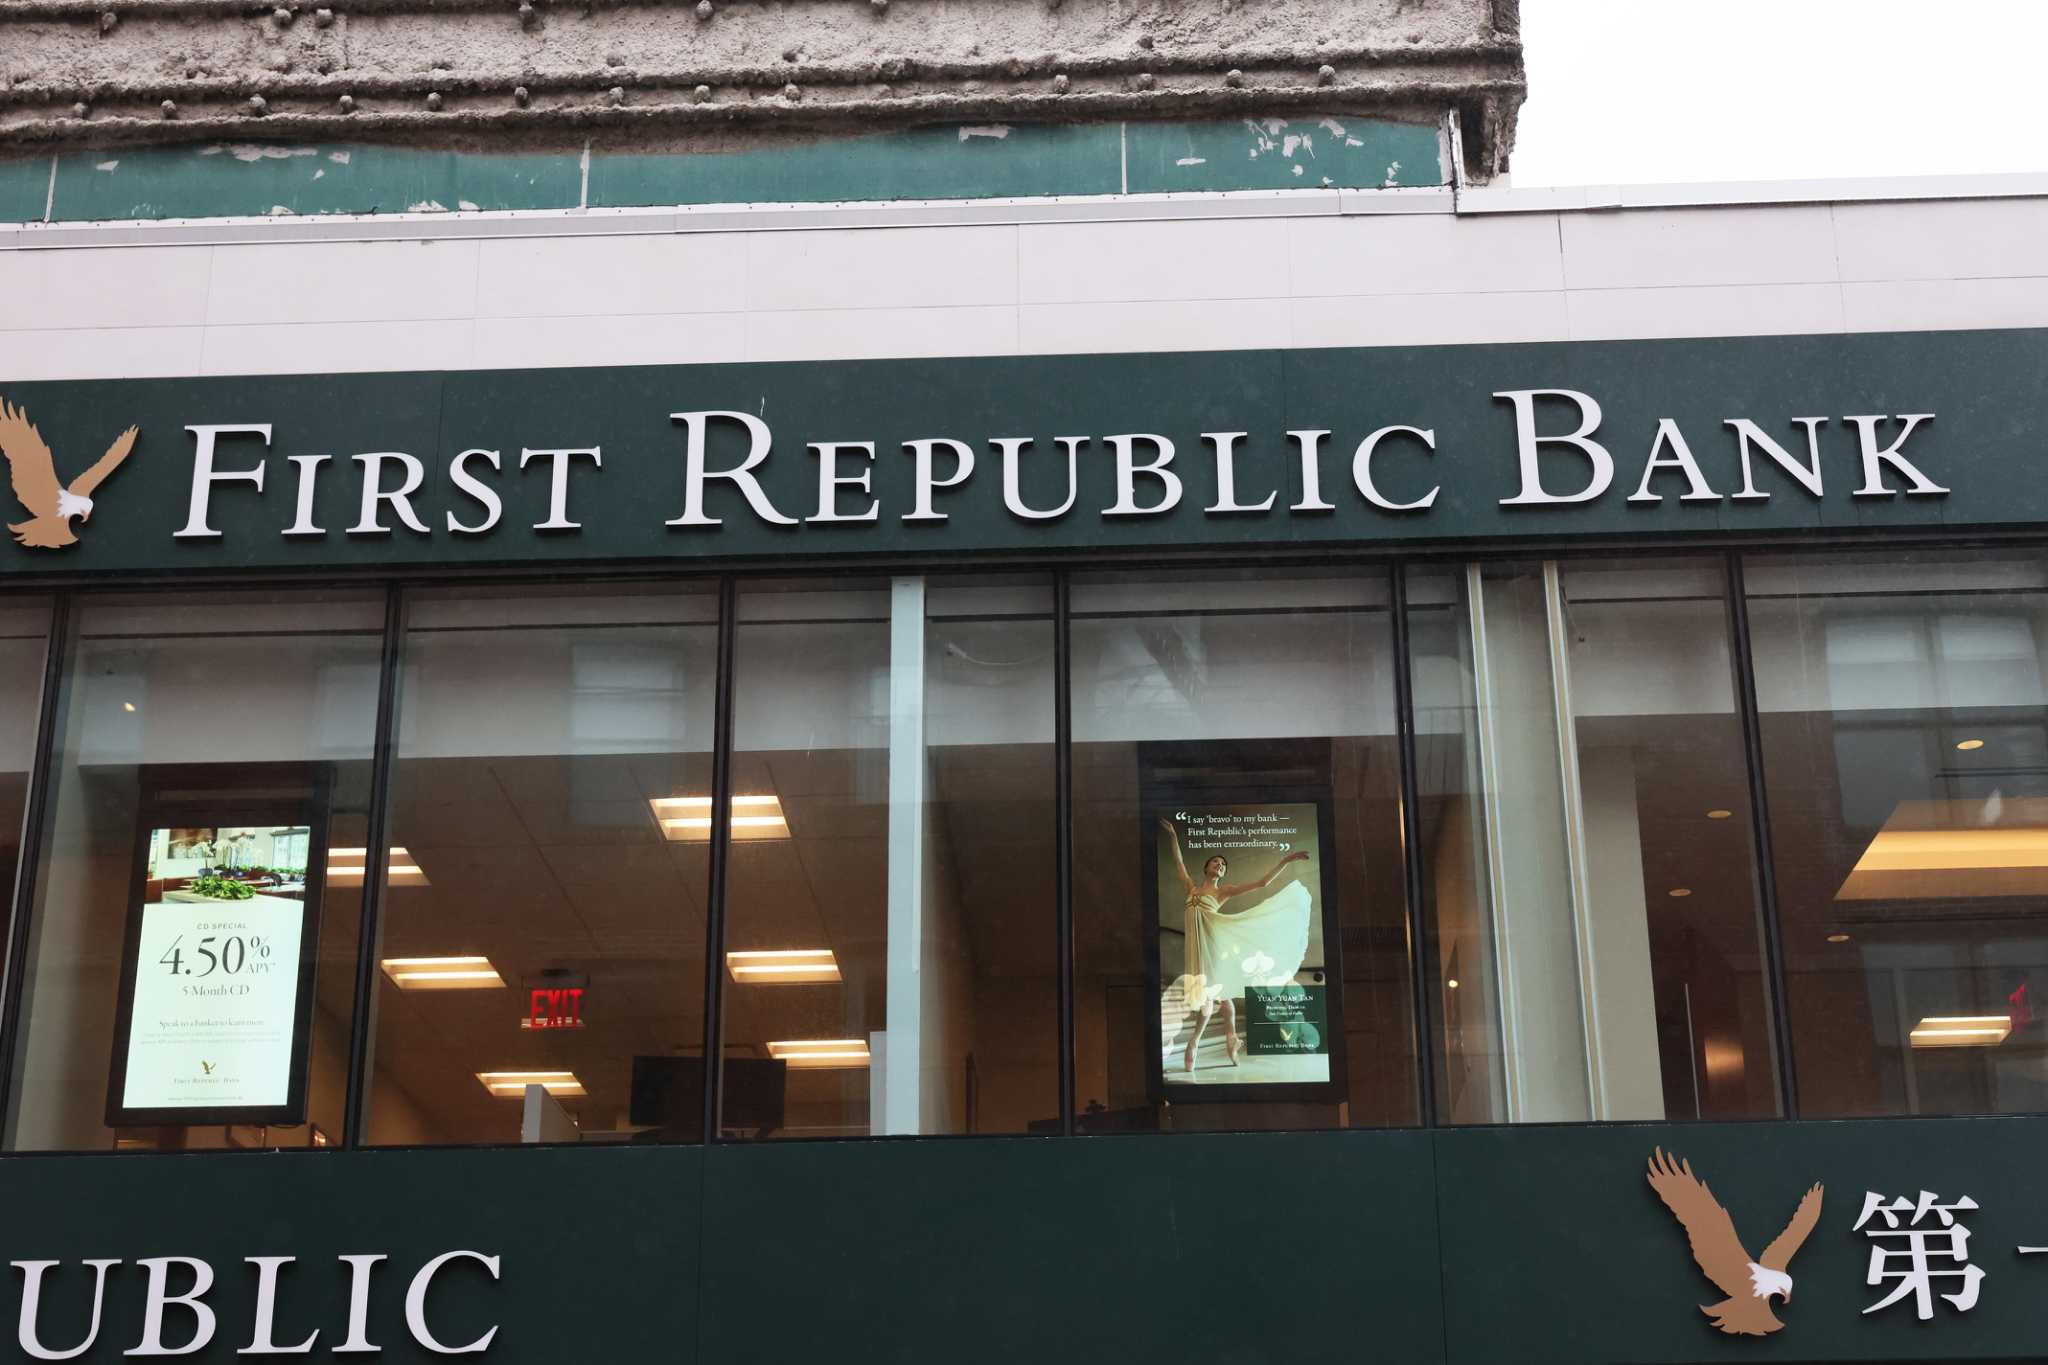 O First Republic Bank, com sede em SF, está explorando a possibilidade de uma venda, representante da Bloomberg